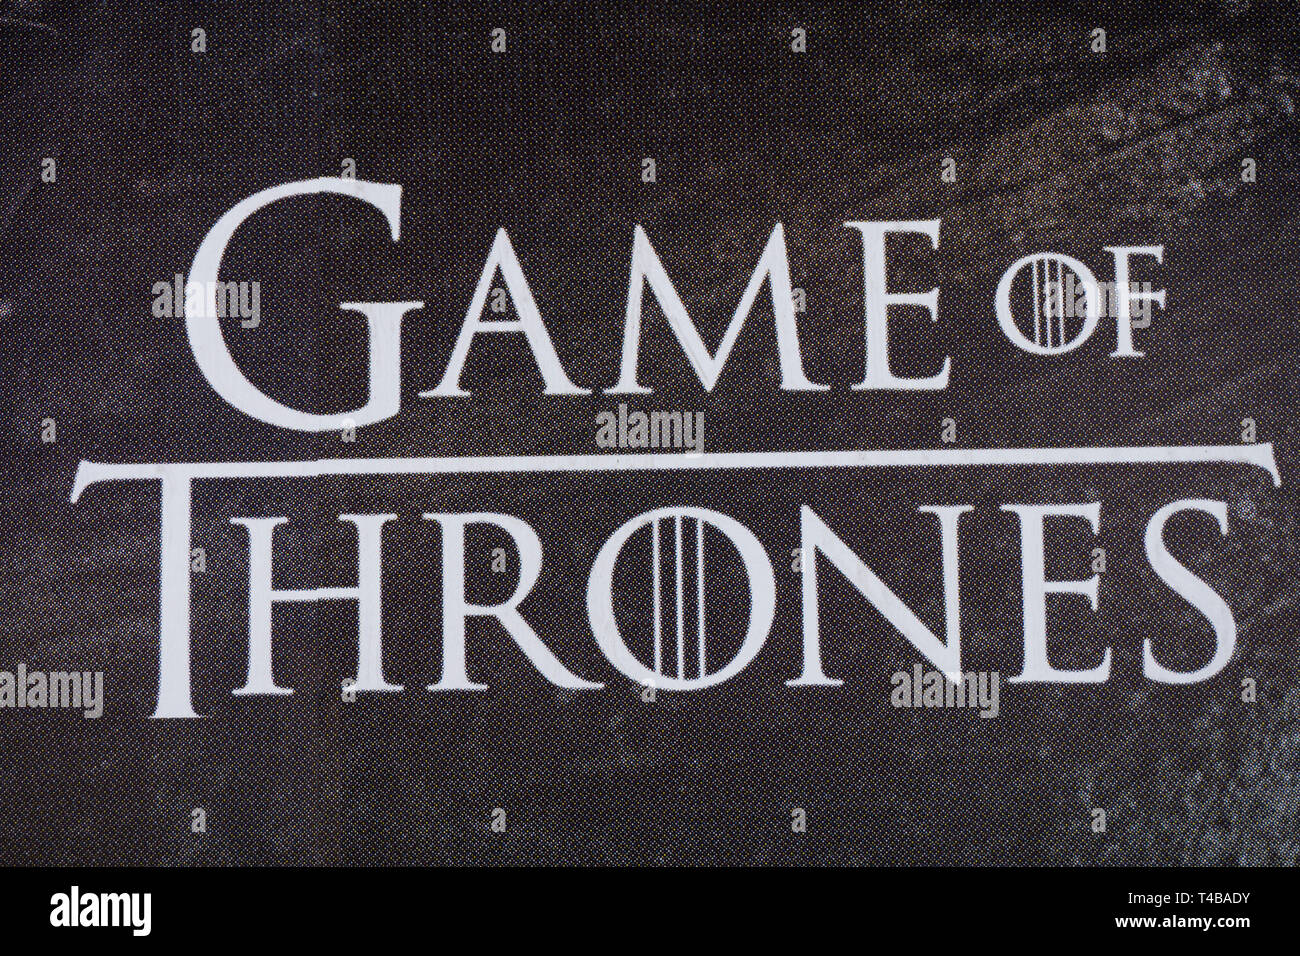 LONDON, Großbritannien - 15 April, 2019: Spiel der Throne Plakatwand in London. Spiel der Throne ist eine TV-Serie für HBO gemacht Stockfoto